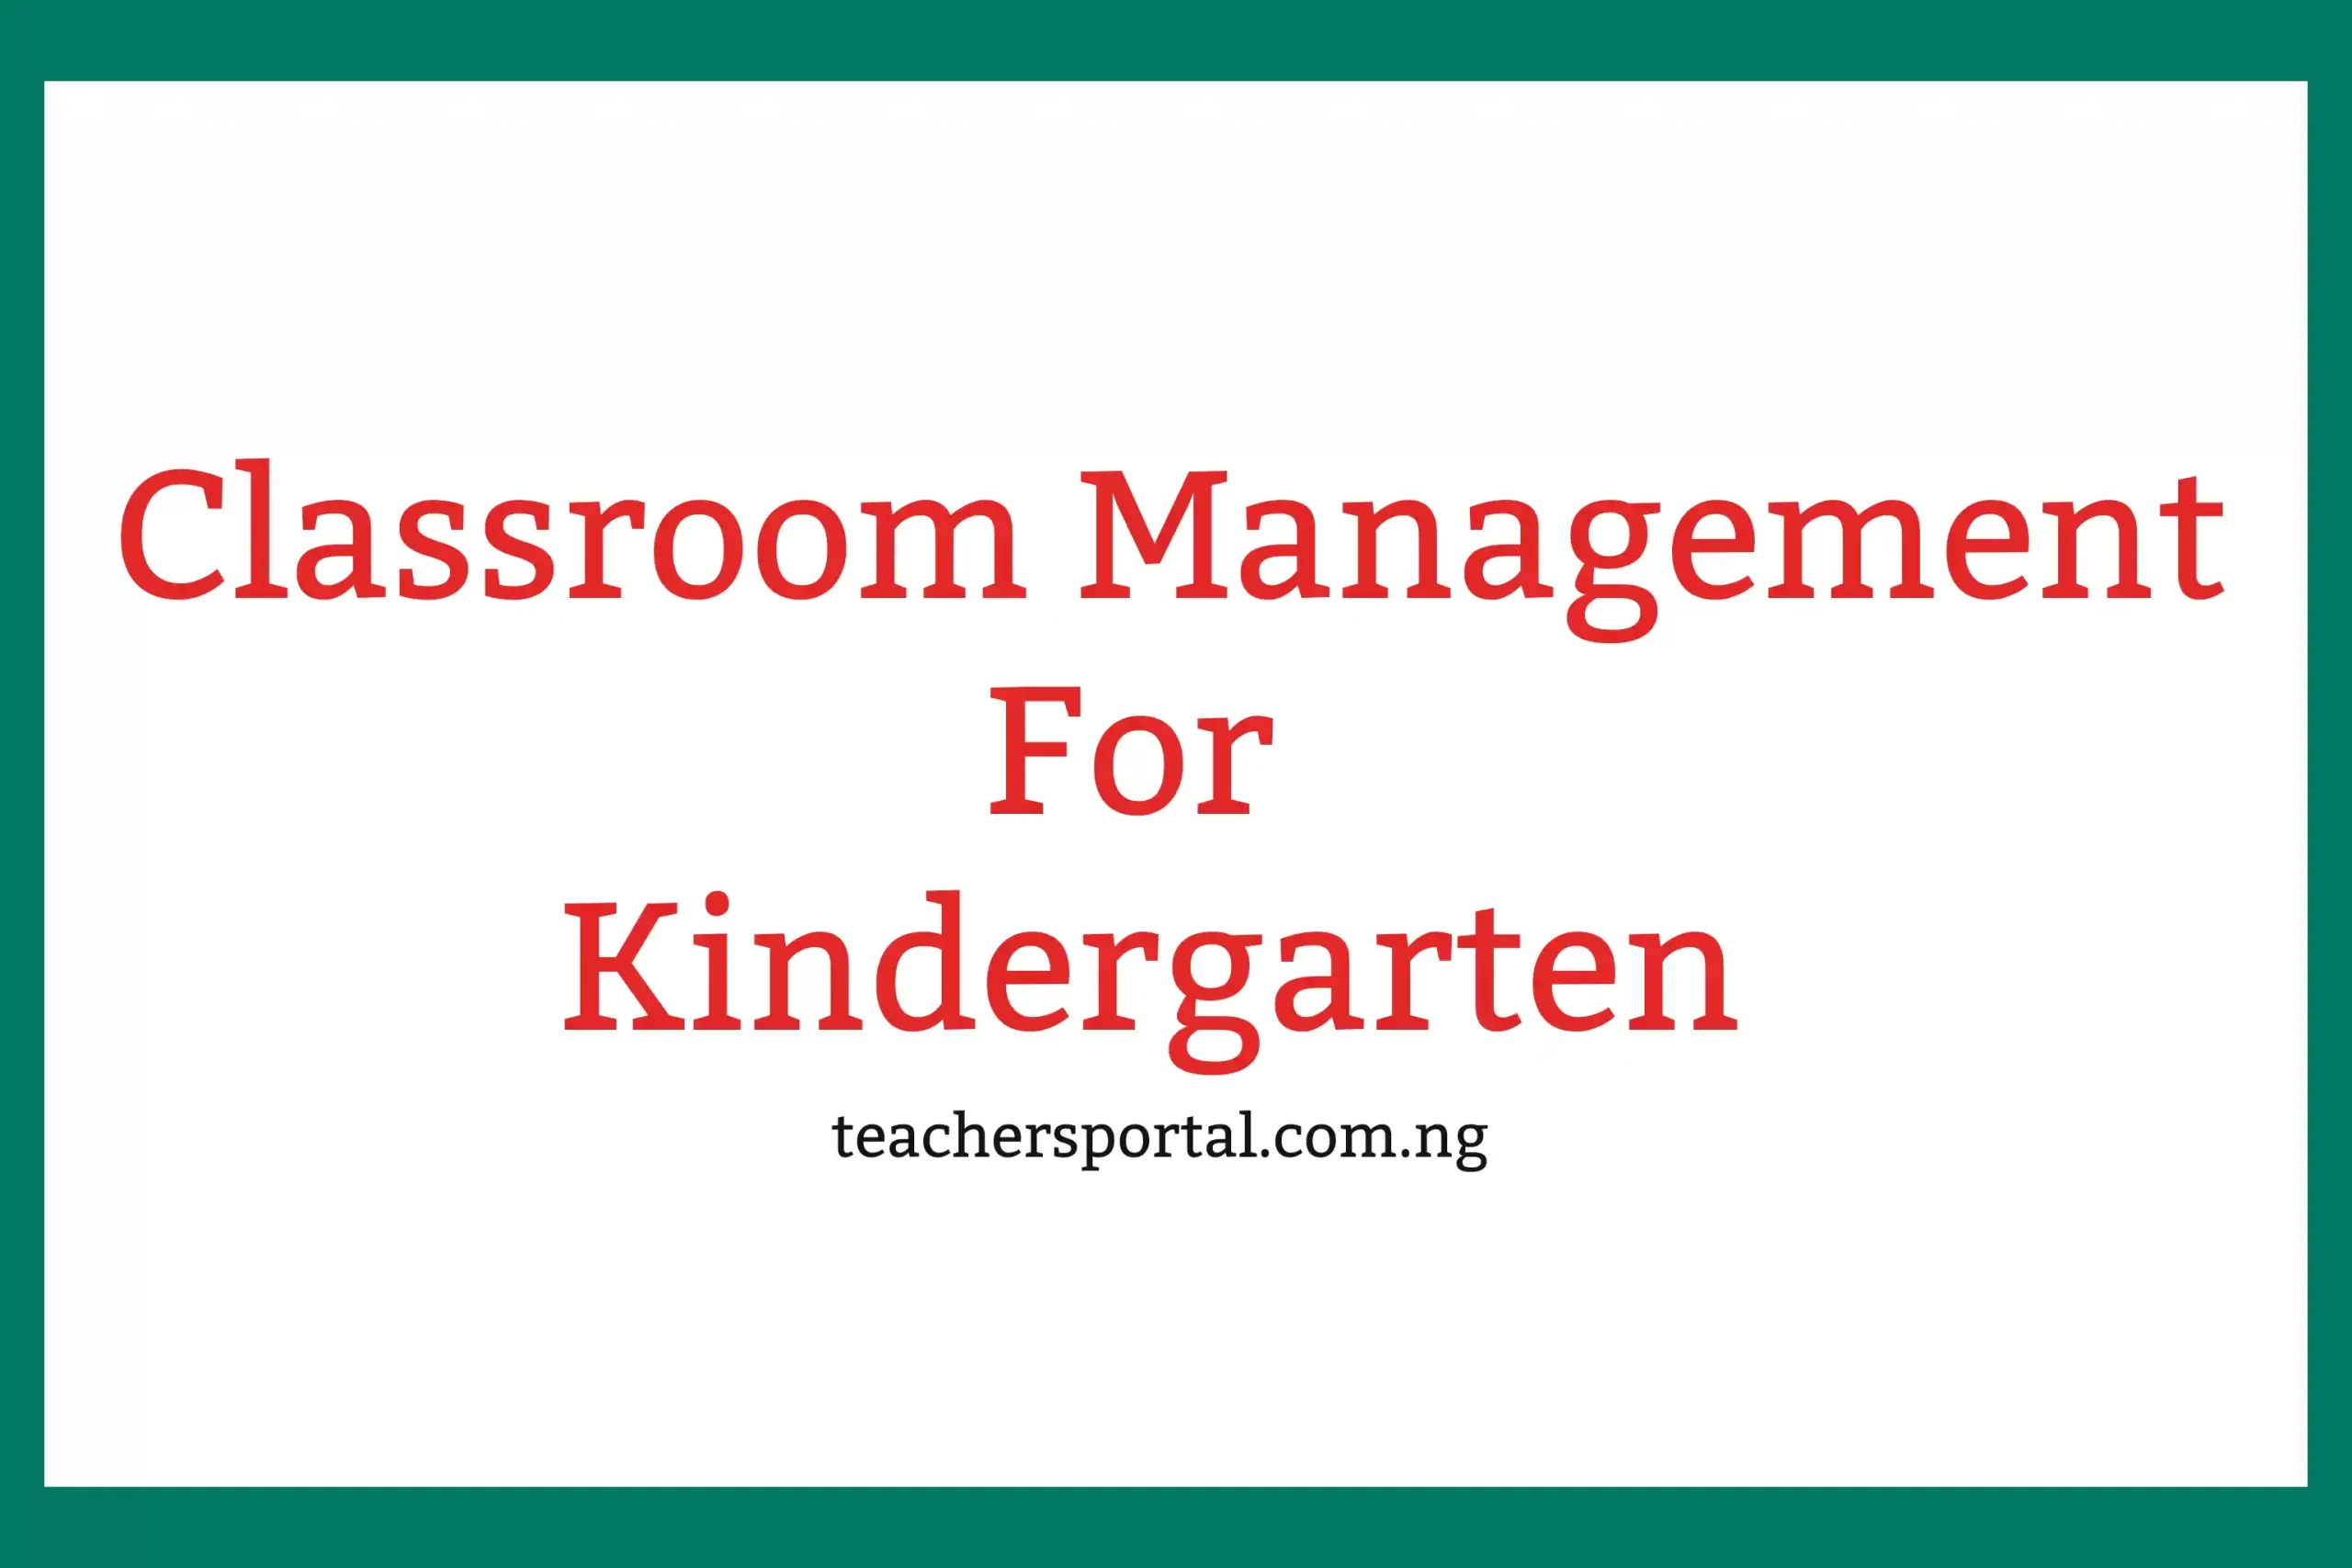 Classroom Management For Kindergarten